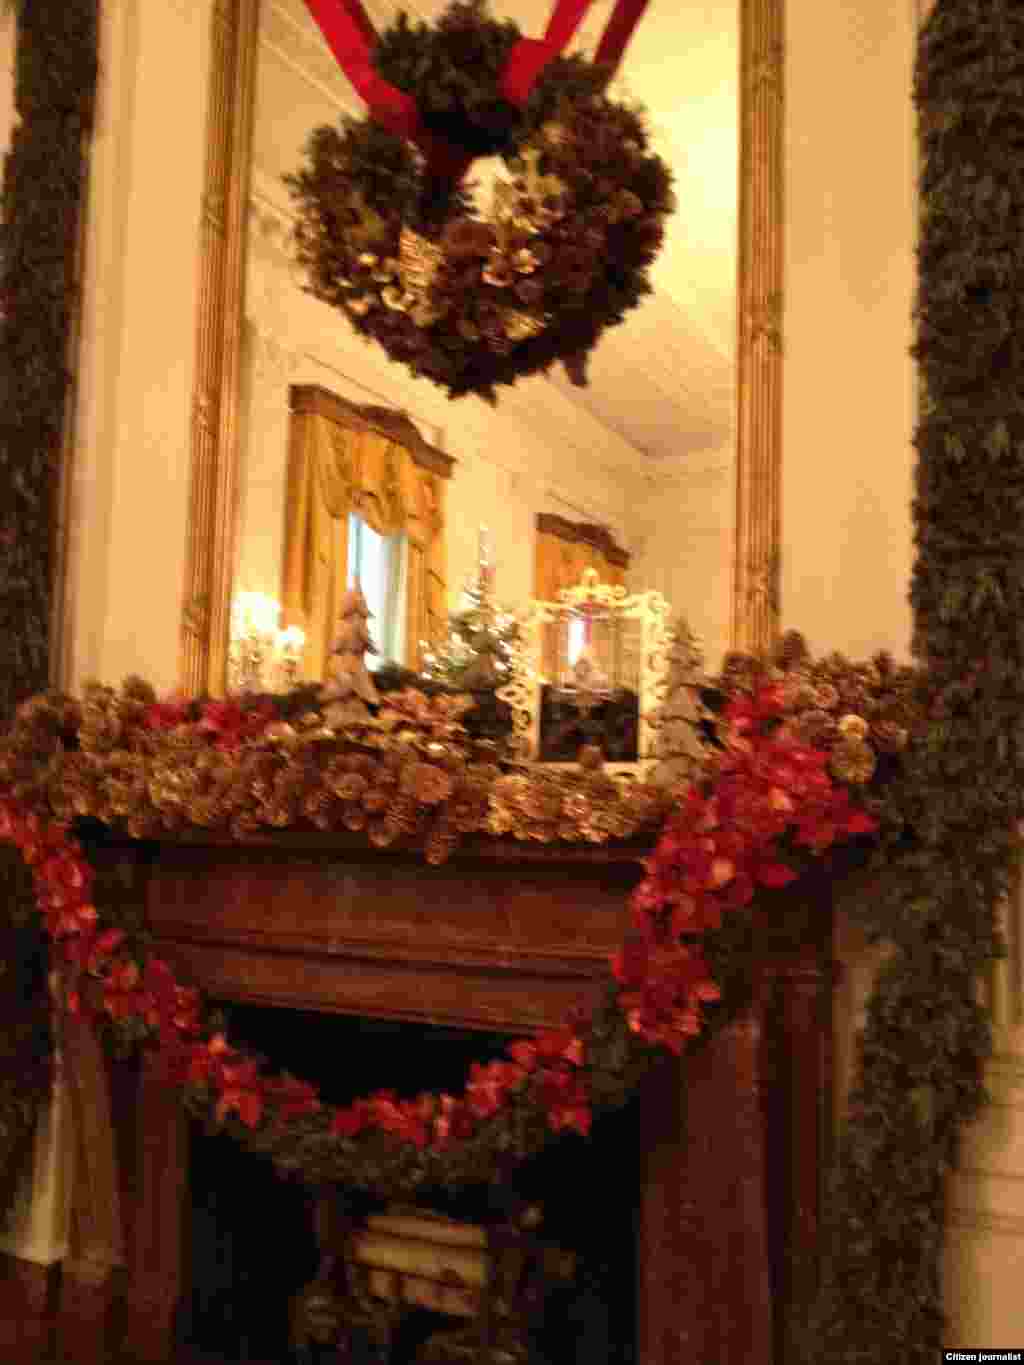 ການຕົກແຕ່ງກະຈົກບານໃຫຍ່ ຢູ່ຫ້ອງຕາເວັນອອກ ຫລື the East Room (White House Christmas Tour, Dec. 22, 2012)